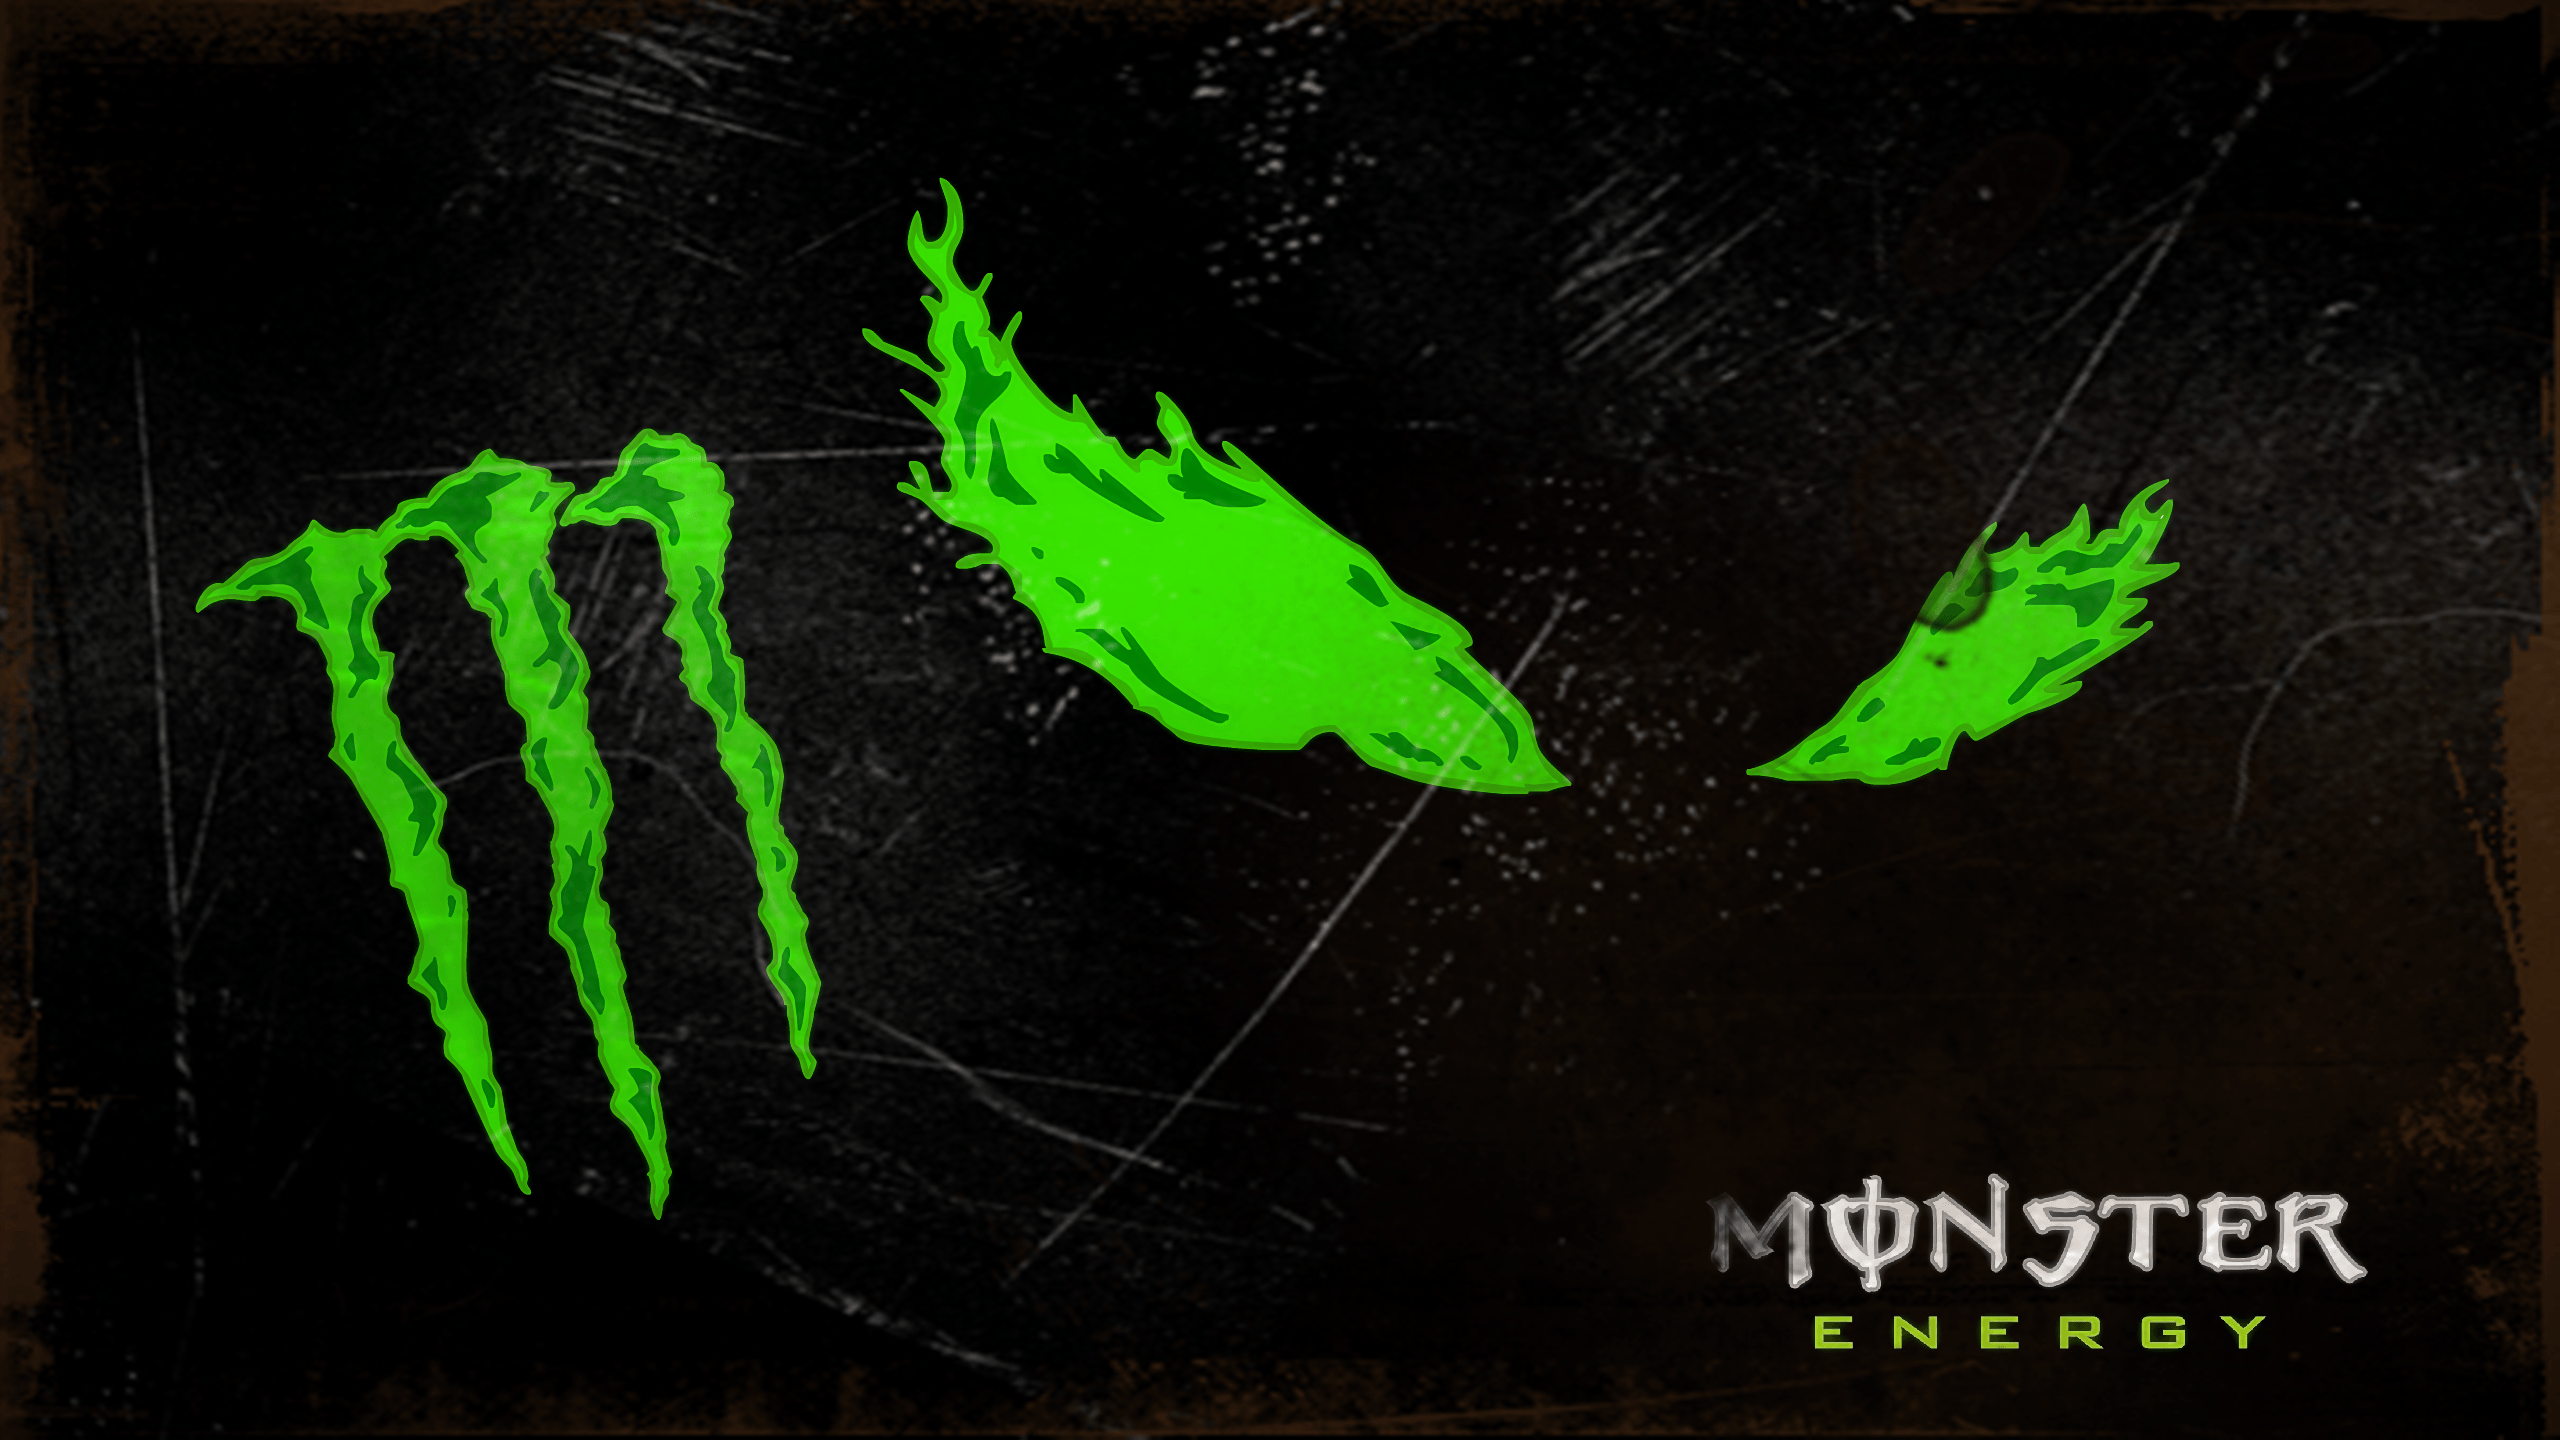 HD Monster Energy Wallpaper